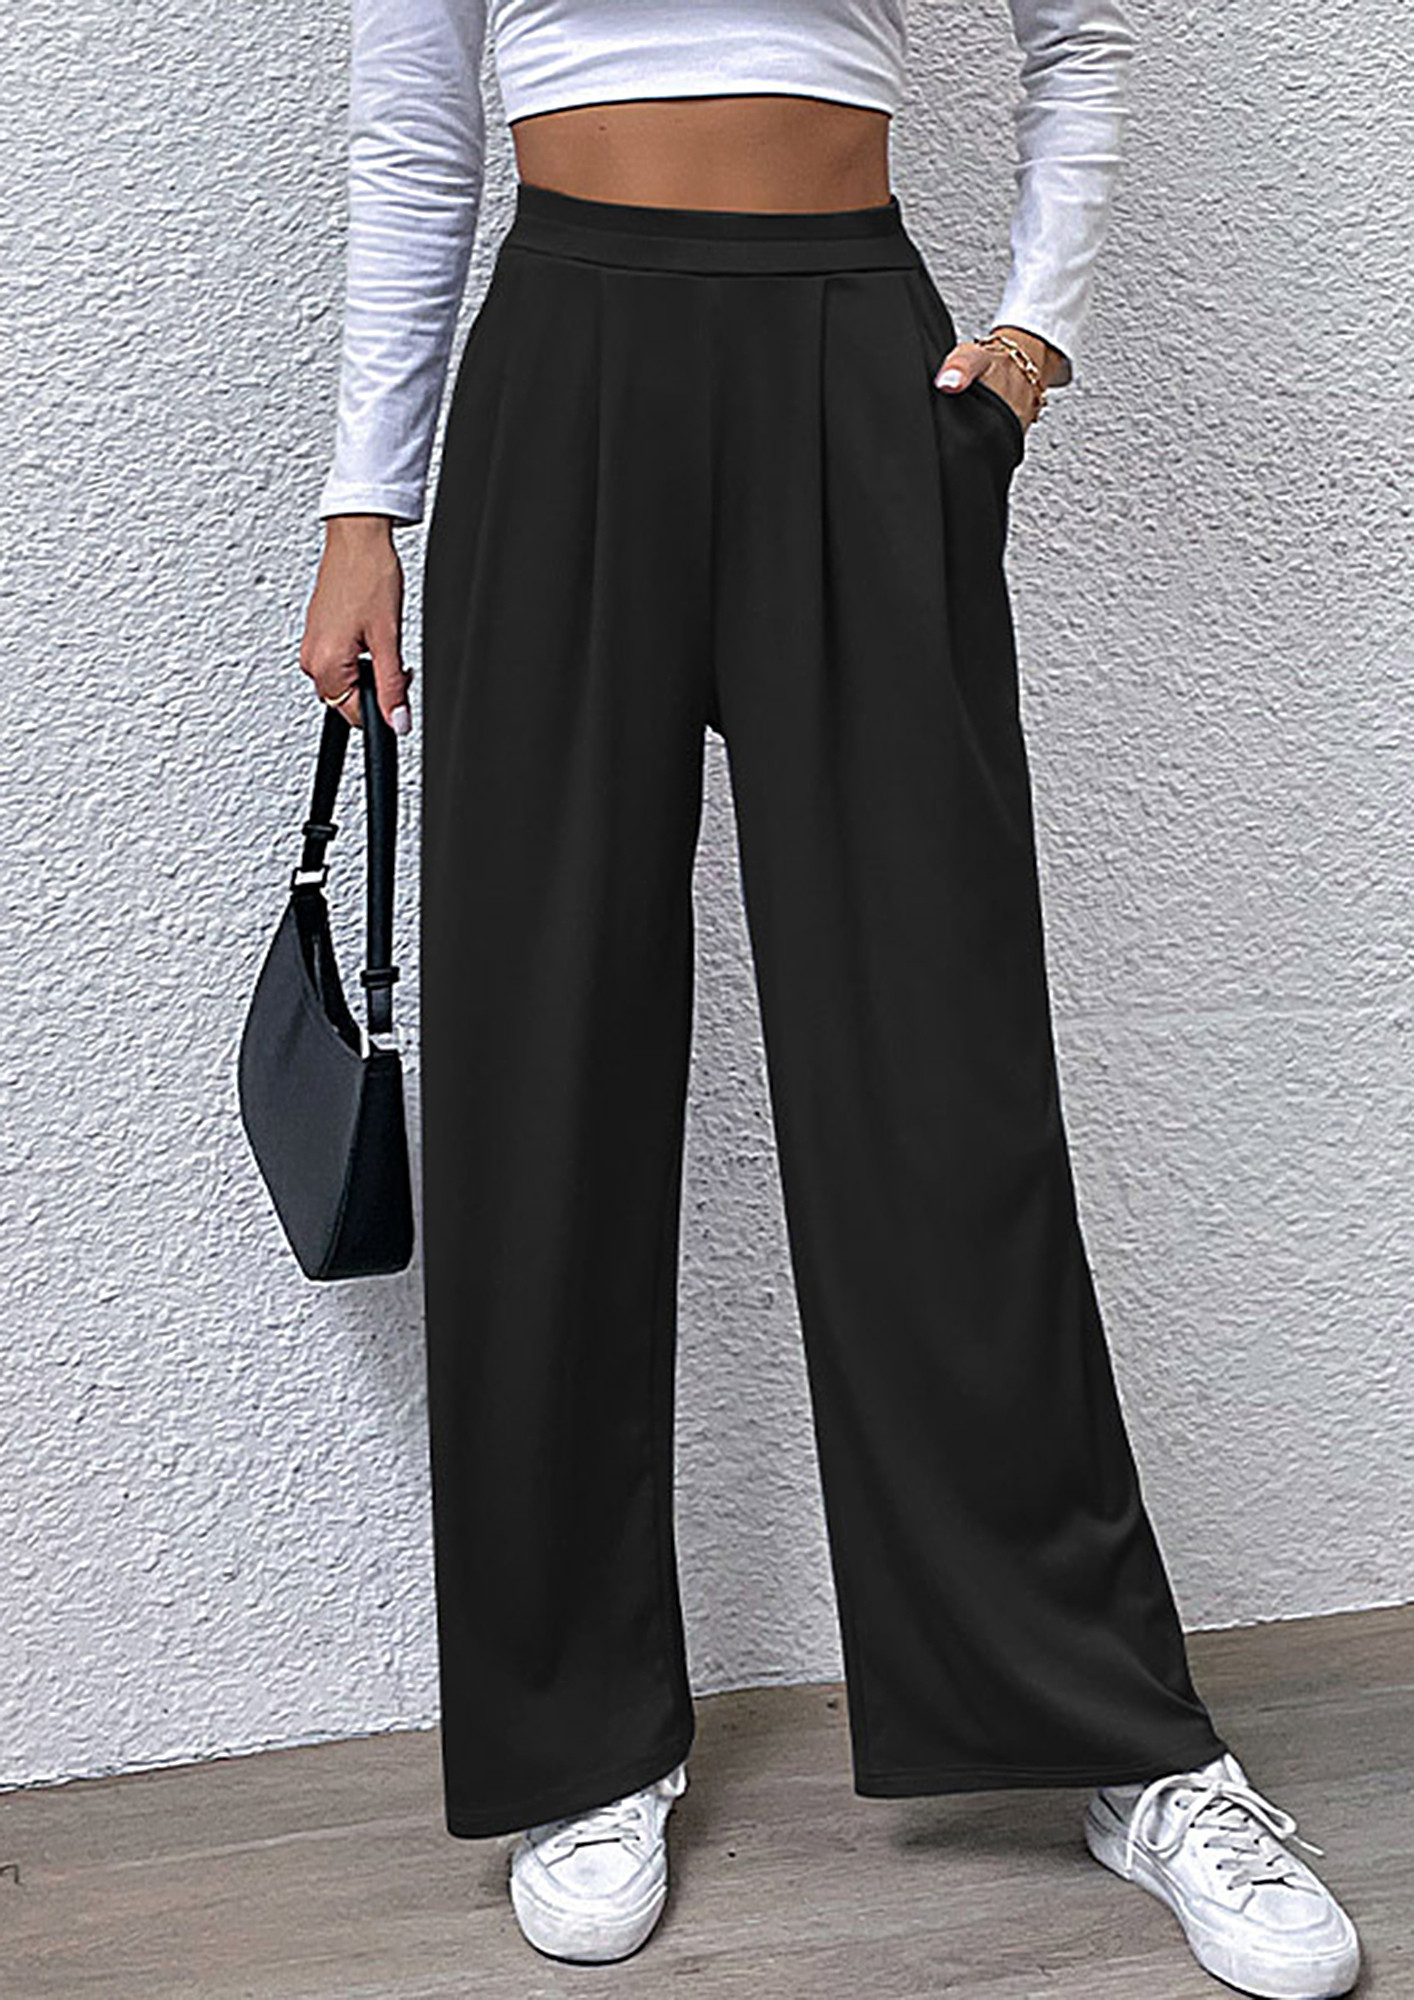 Buy Formal Trousers for Women Online by Blissclub